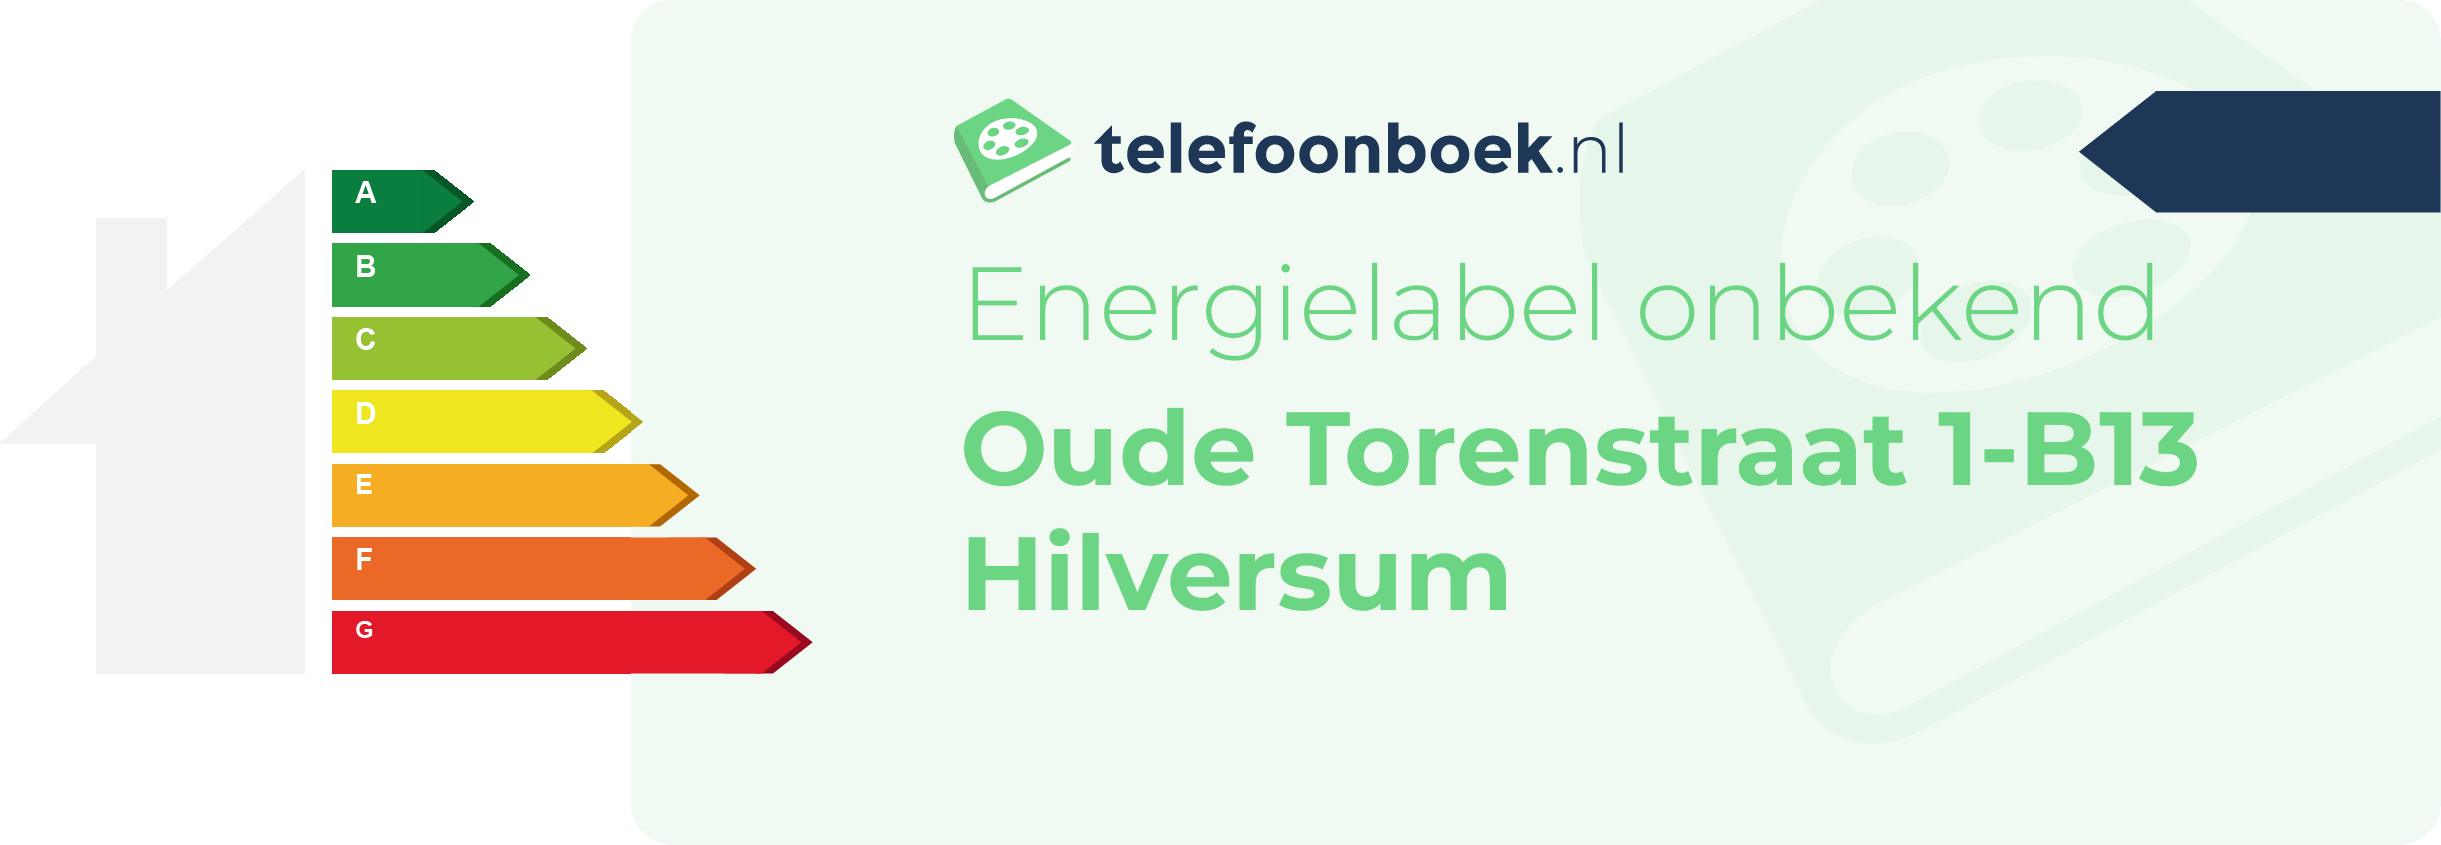 Energielabel Oude Torenstraat 1-B13 Hilversum